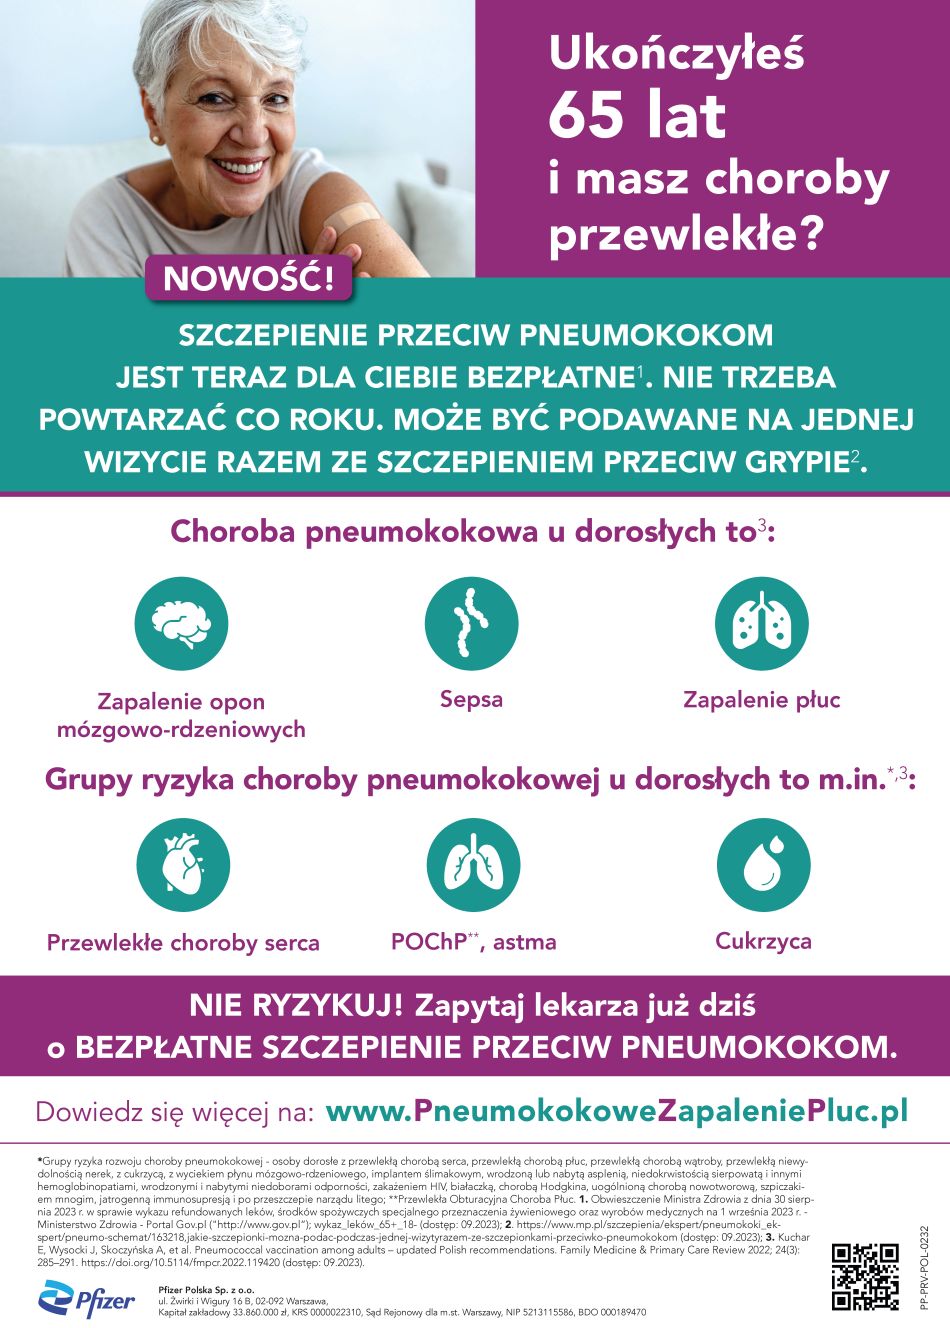 Bezpłatne szczepienia przeciwko pneumokokom dla osób 65+